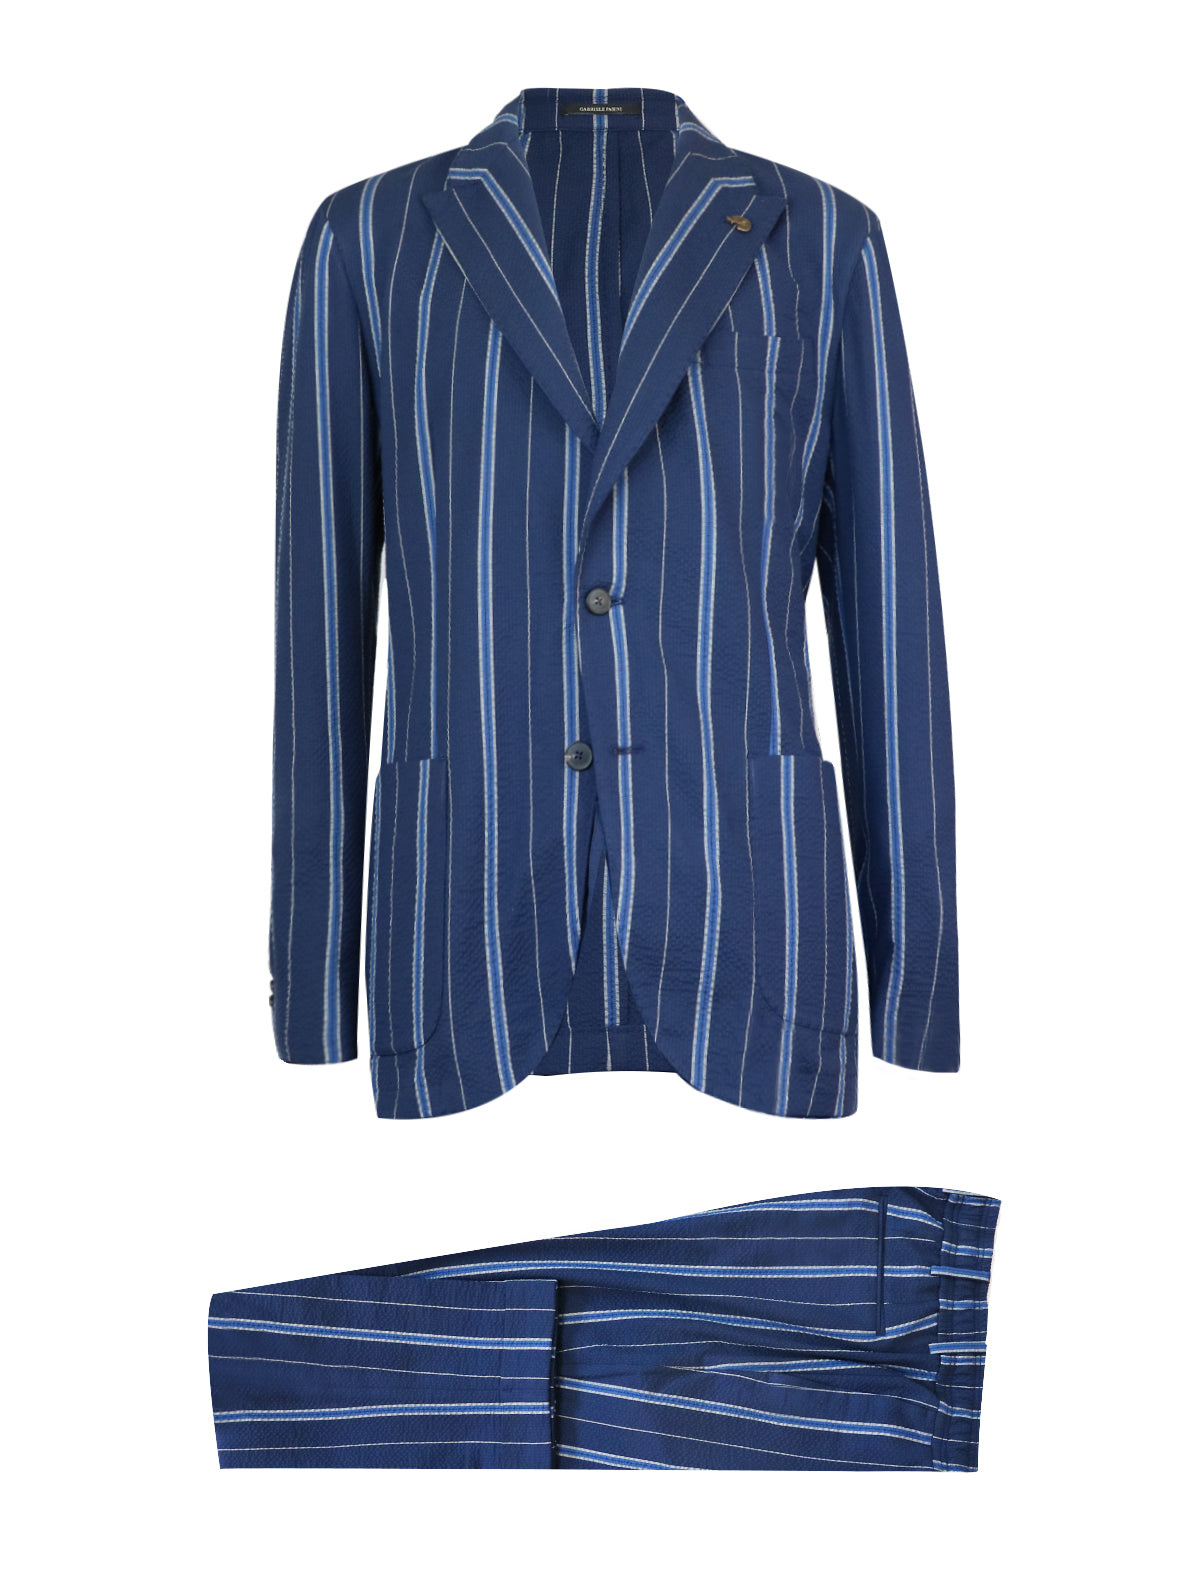 GABRIELE PASINI 2-Piece Suit in Navy Blue Stripes